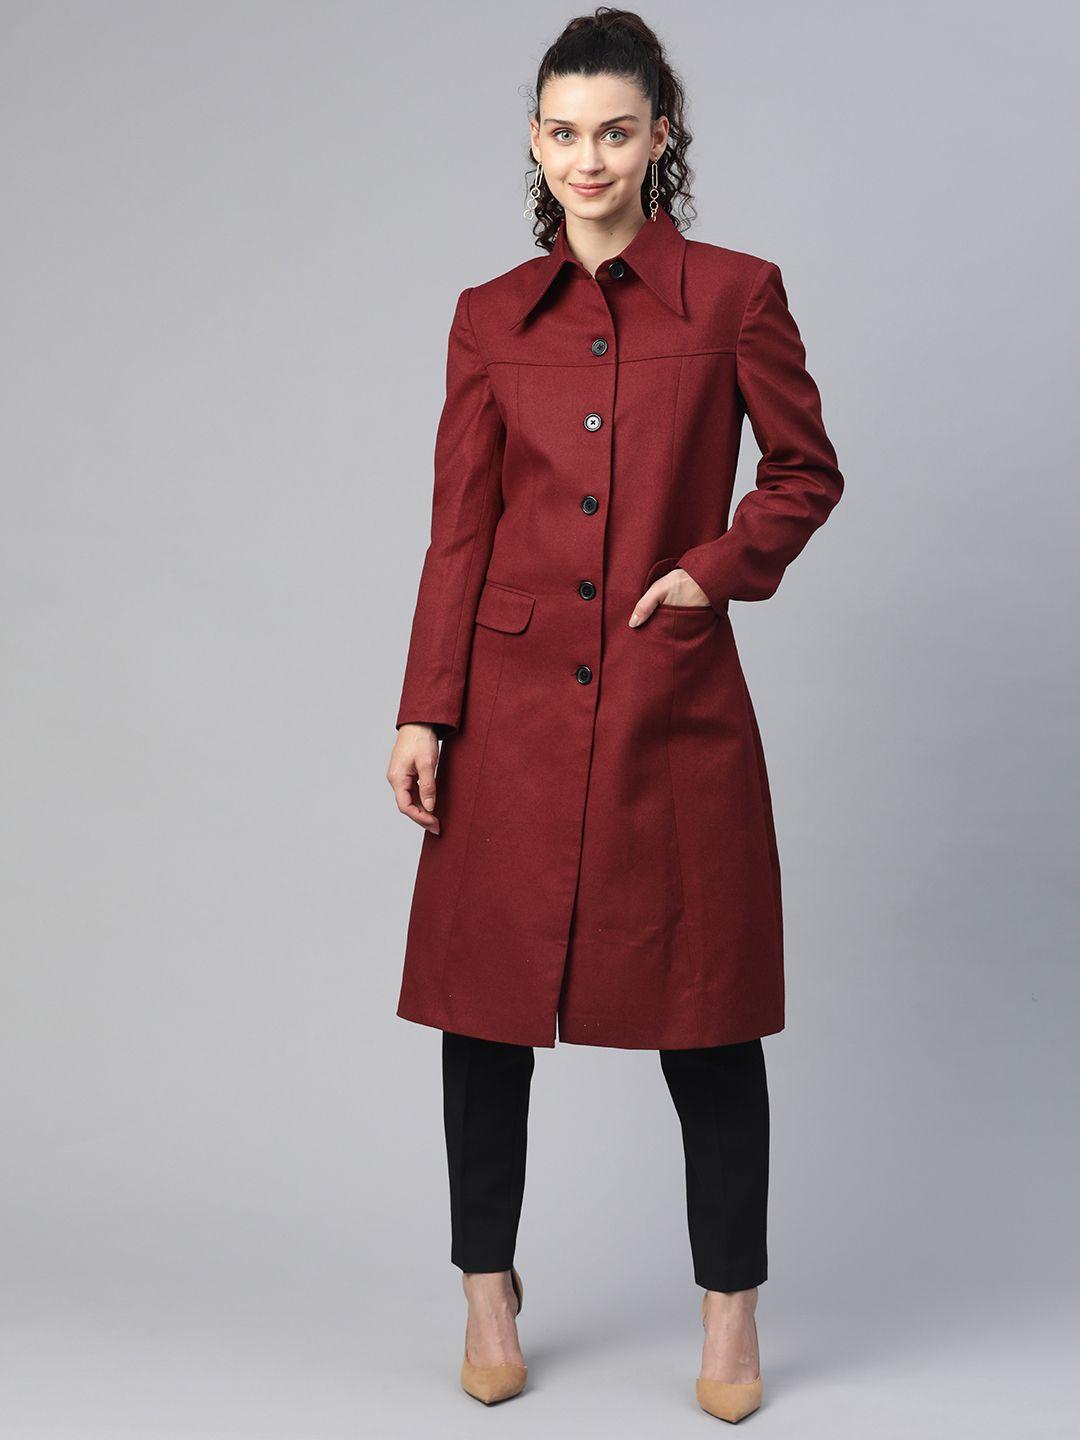 powersutra women burgundy solid knee length overcoat